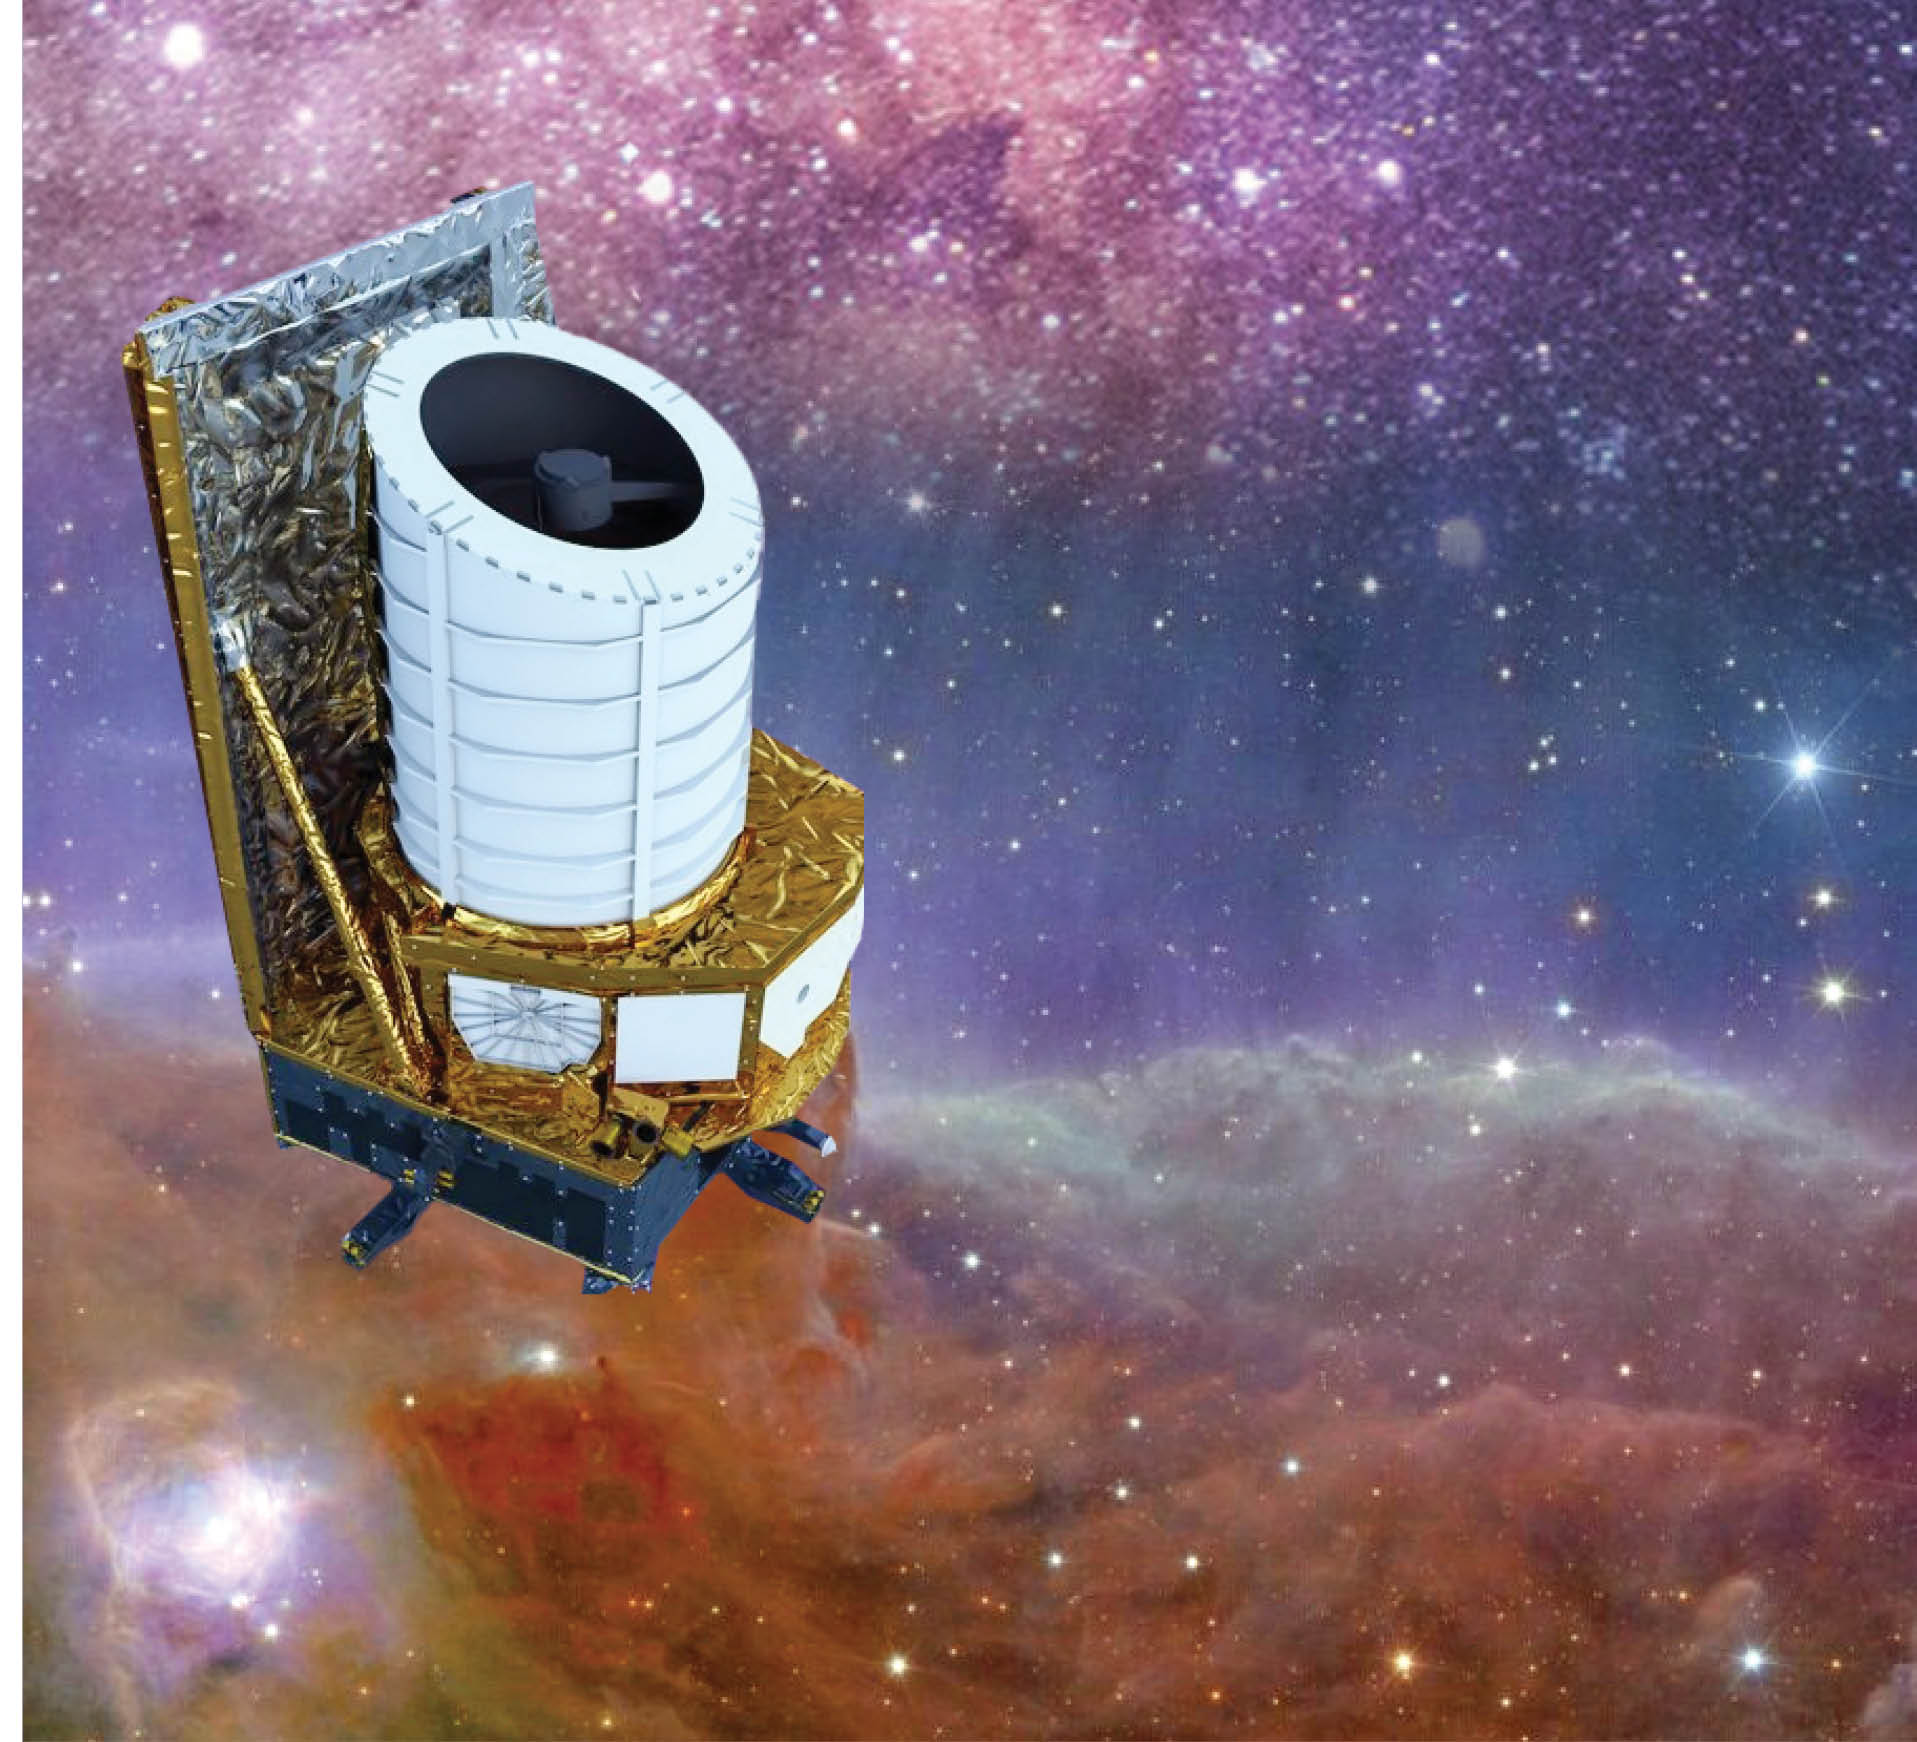 تلسکوپ فضایی اقلیدس با ارسال تصاویری واضح از کیهان، قدرت لنزهایش را به رخ کشید